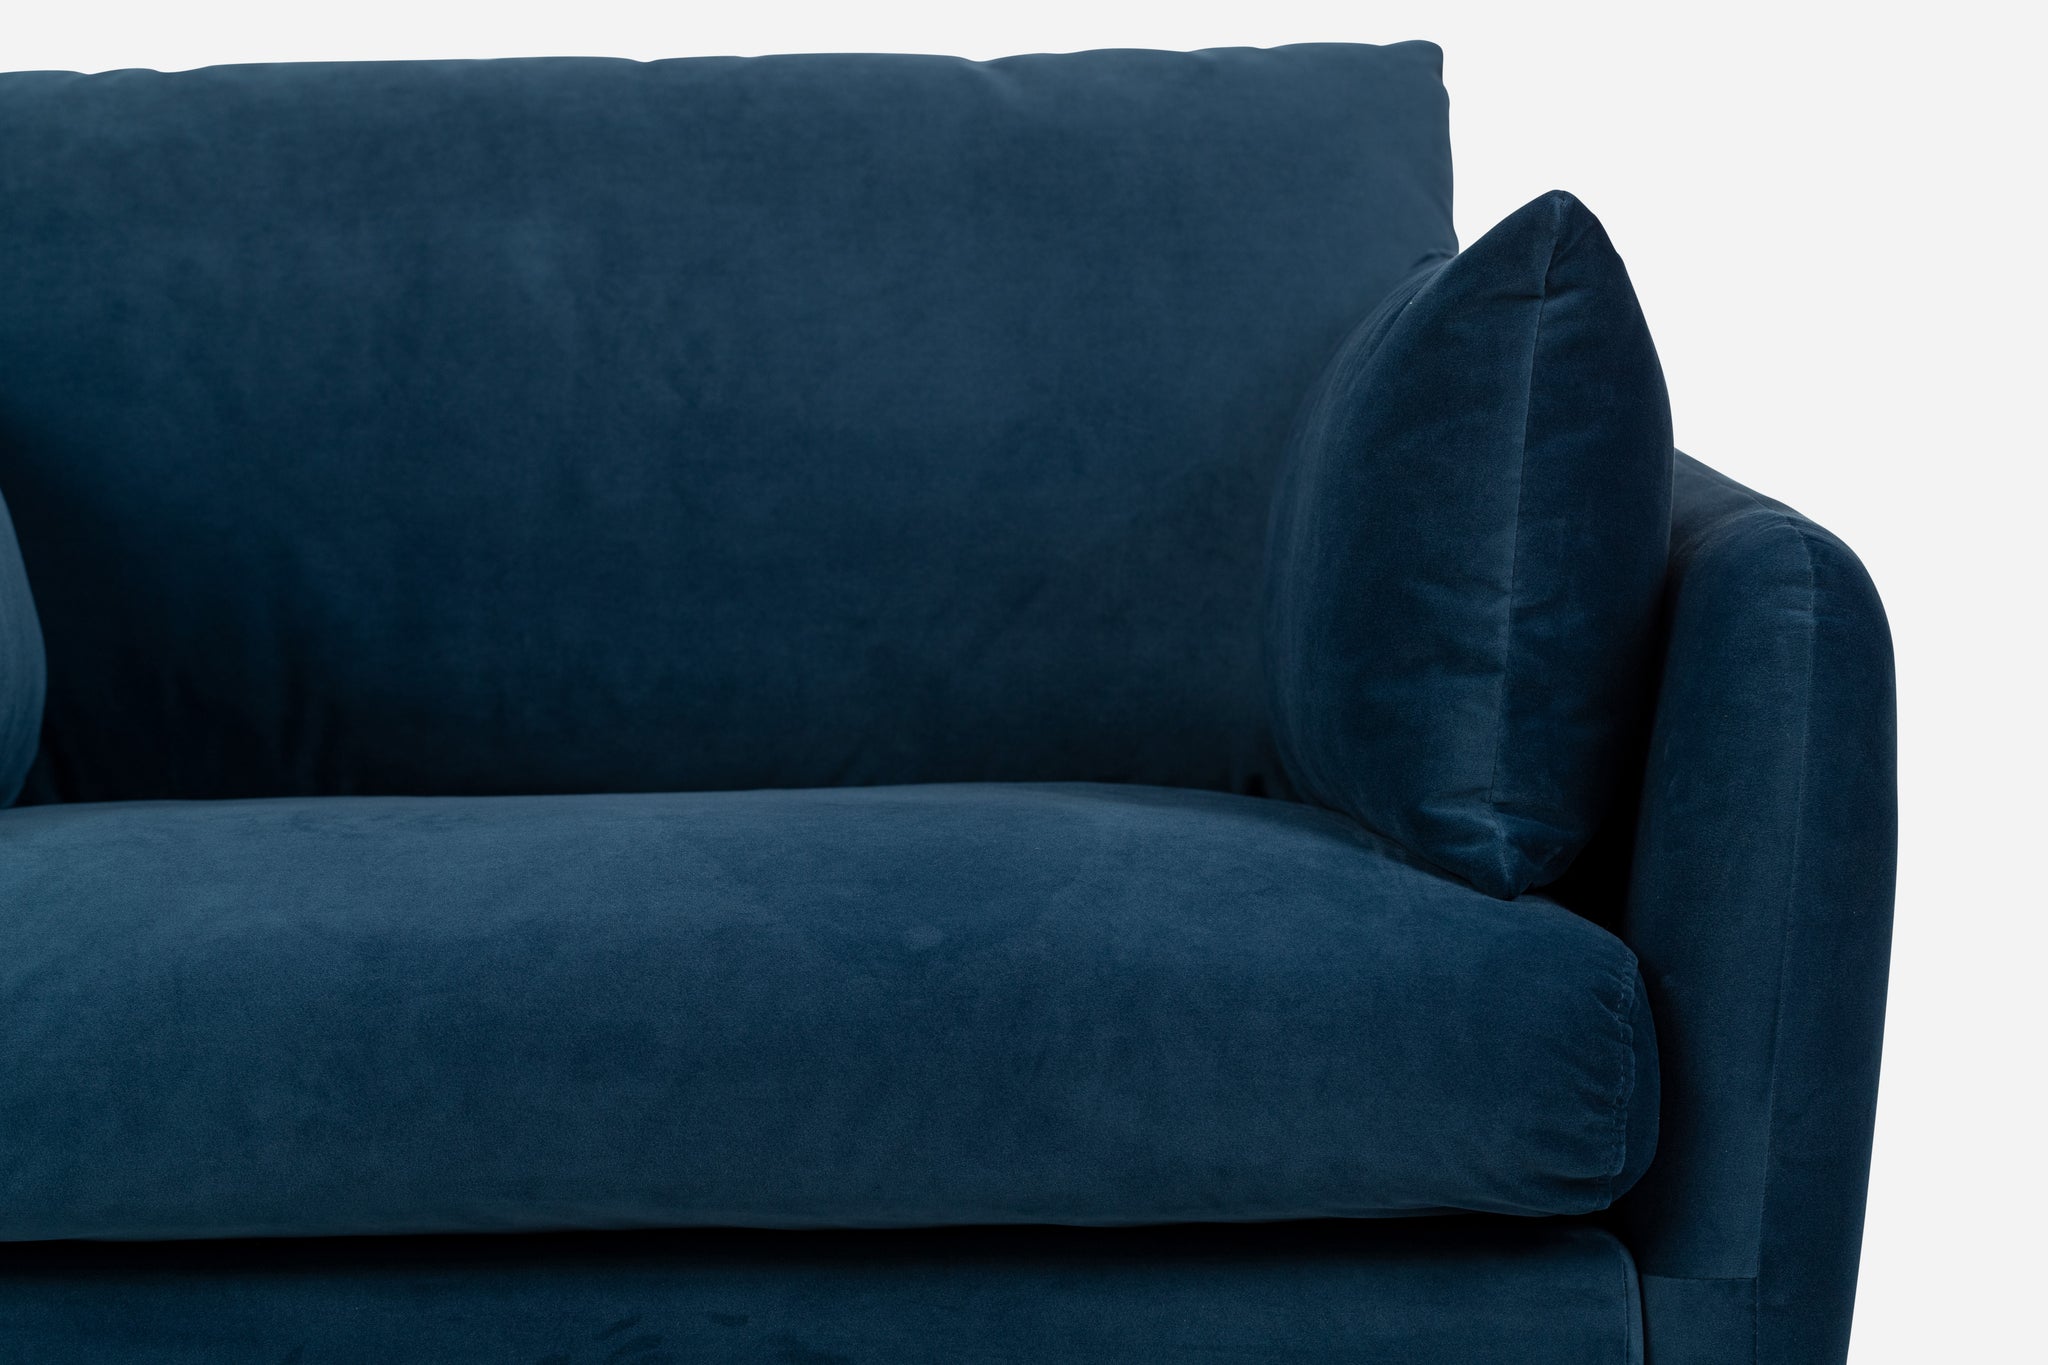 park armchair shown in blue velvet with black legs